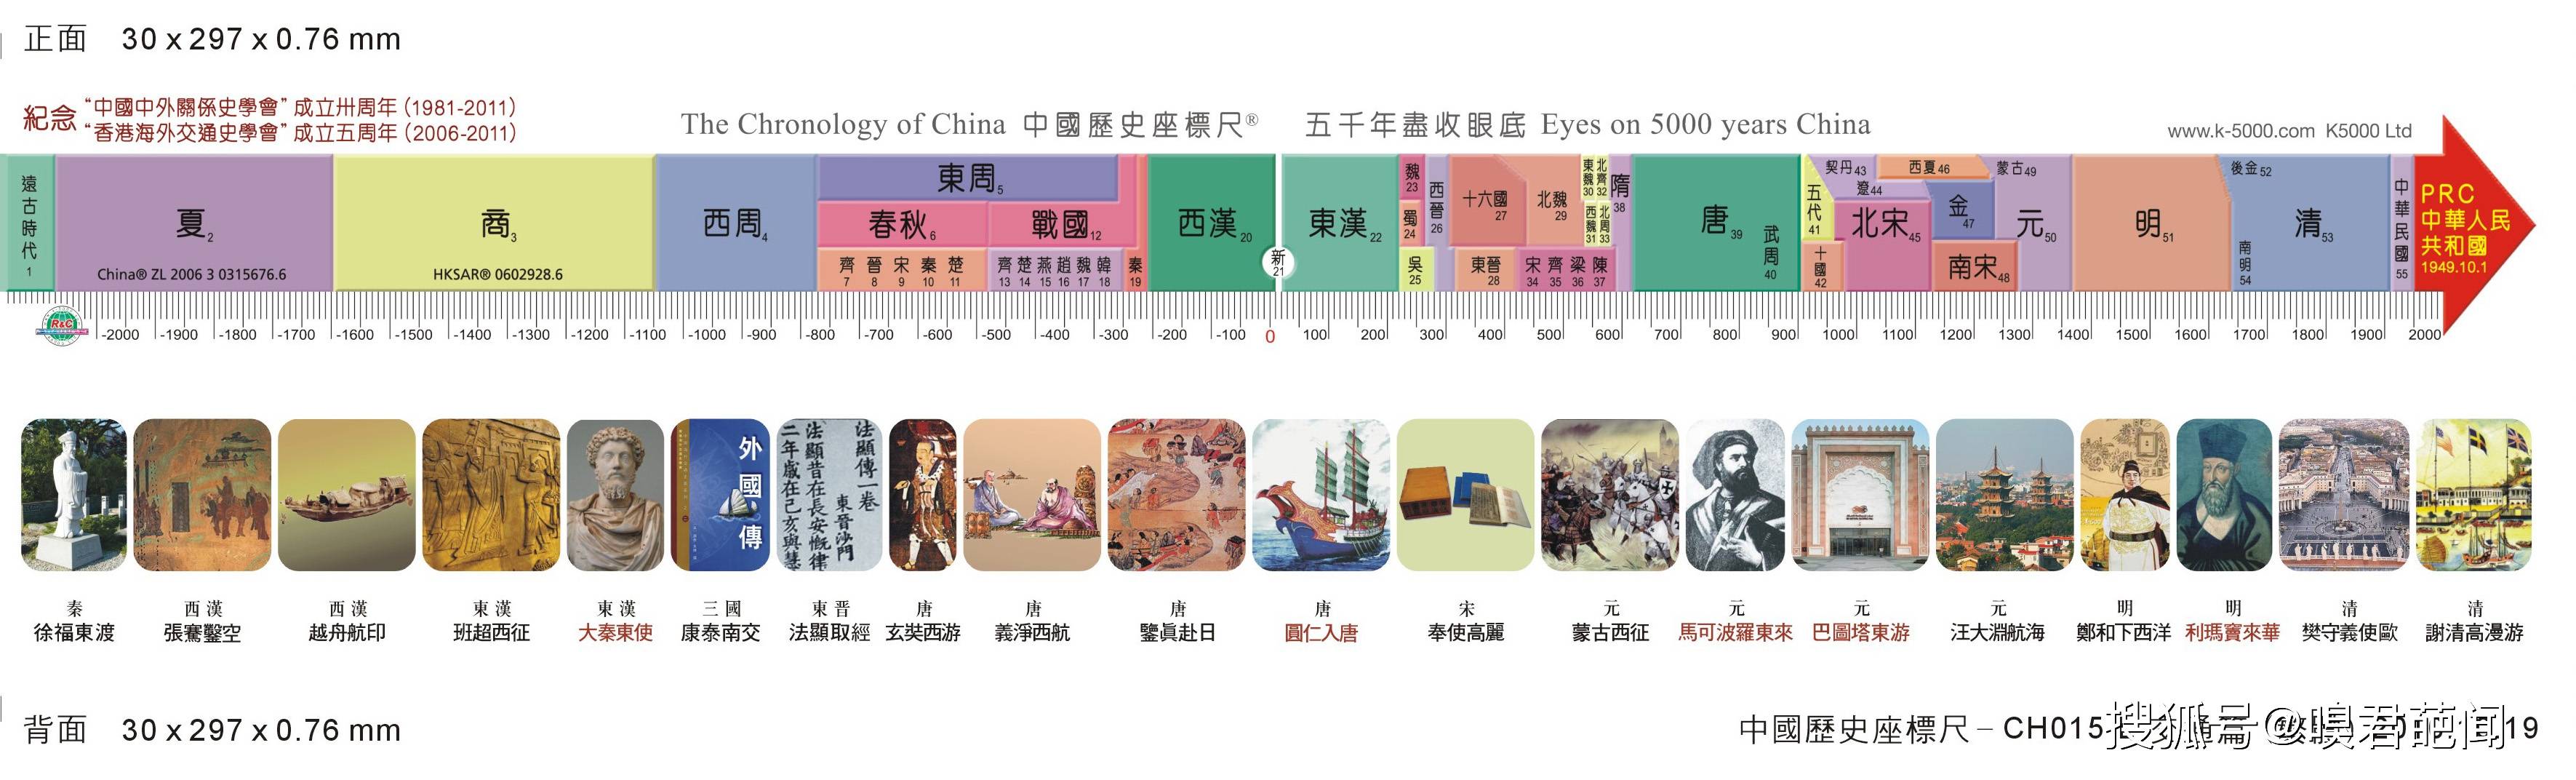 原创中国朝代顺序表,中国历史朝代歌,中国有多少个朝代?